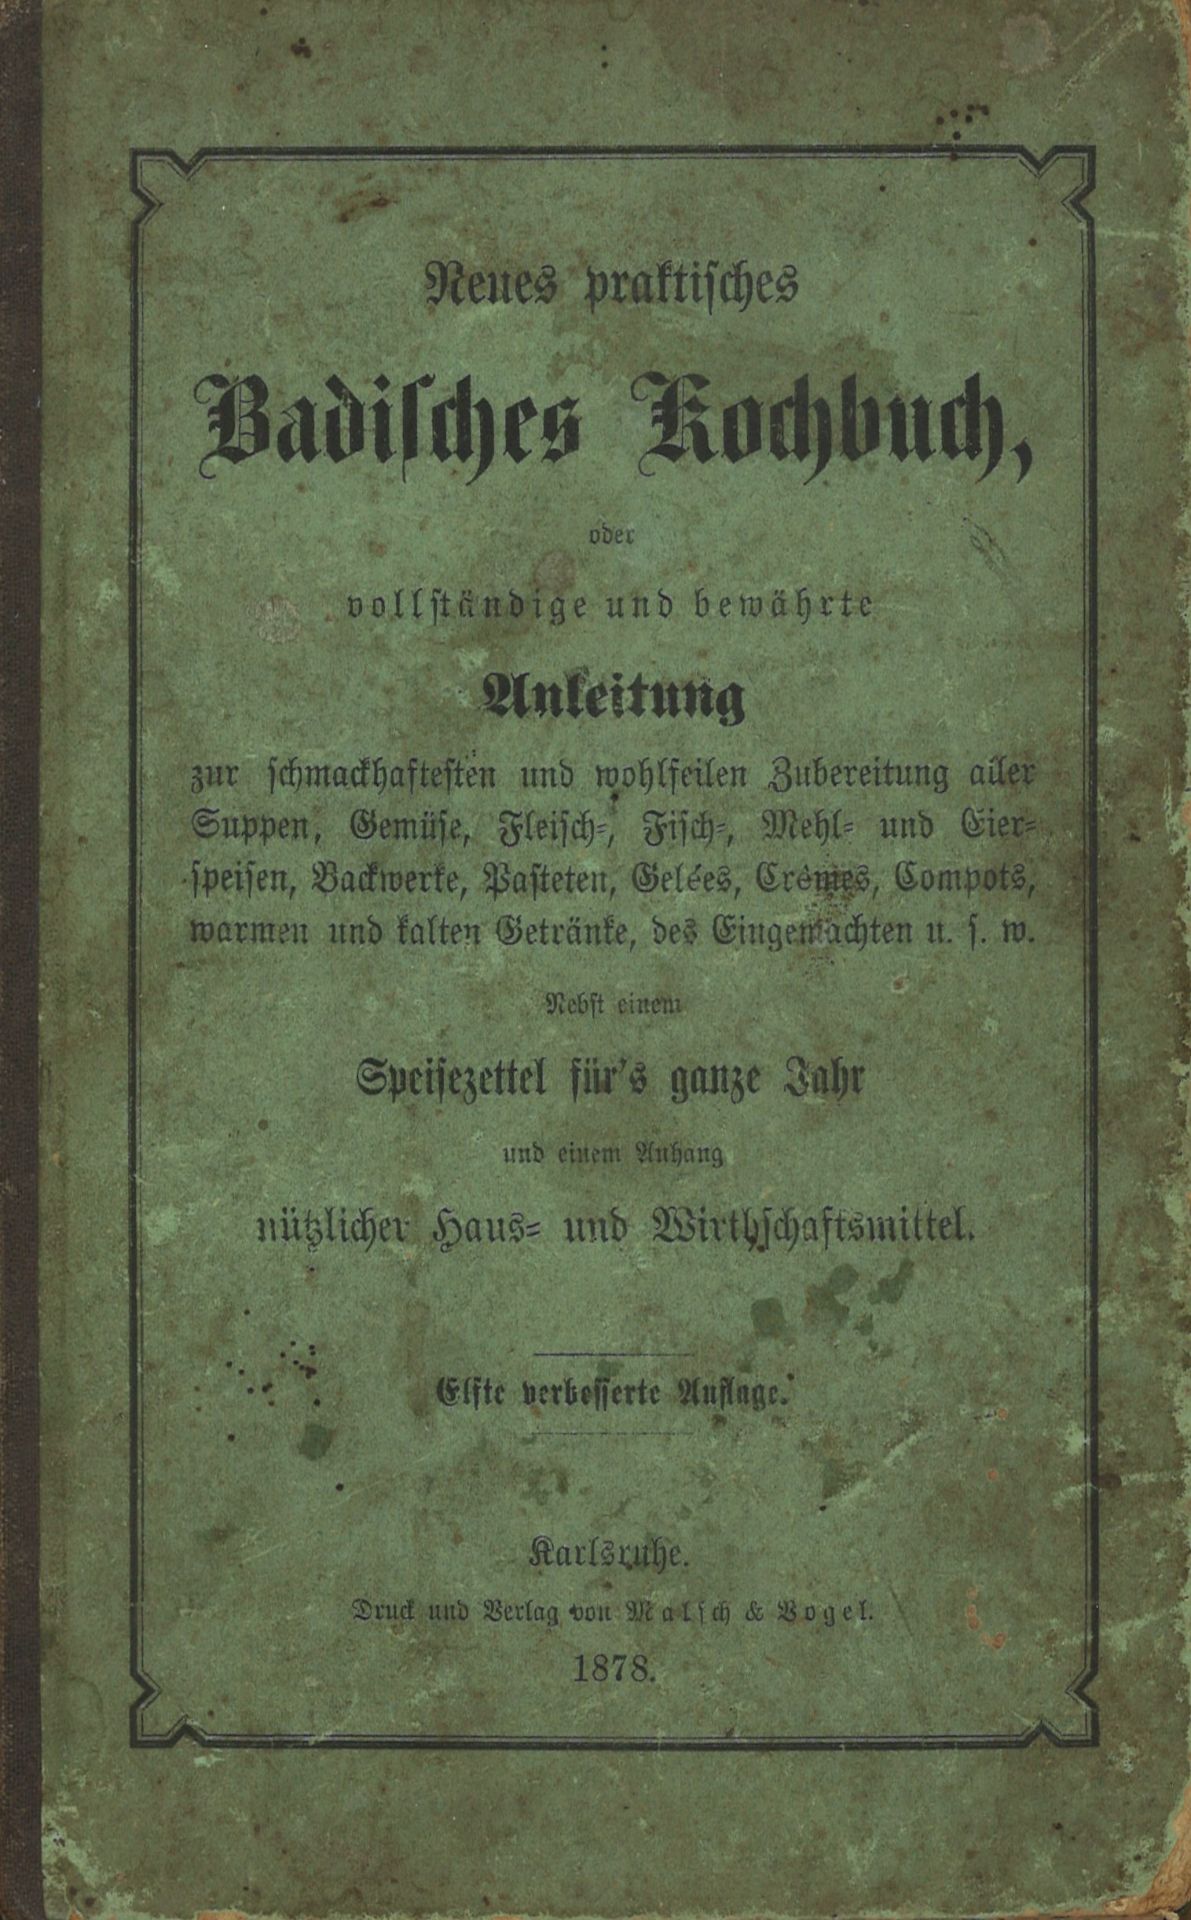 "Neues praktisches badisches Kochbuch" , Originalausgabe von 1878 mit Gebrauchsspuren und